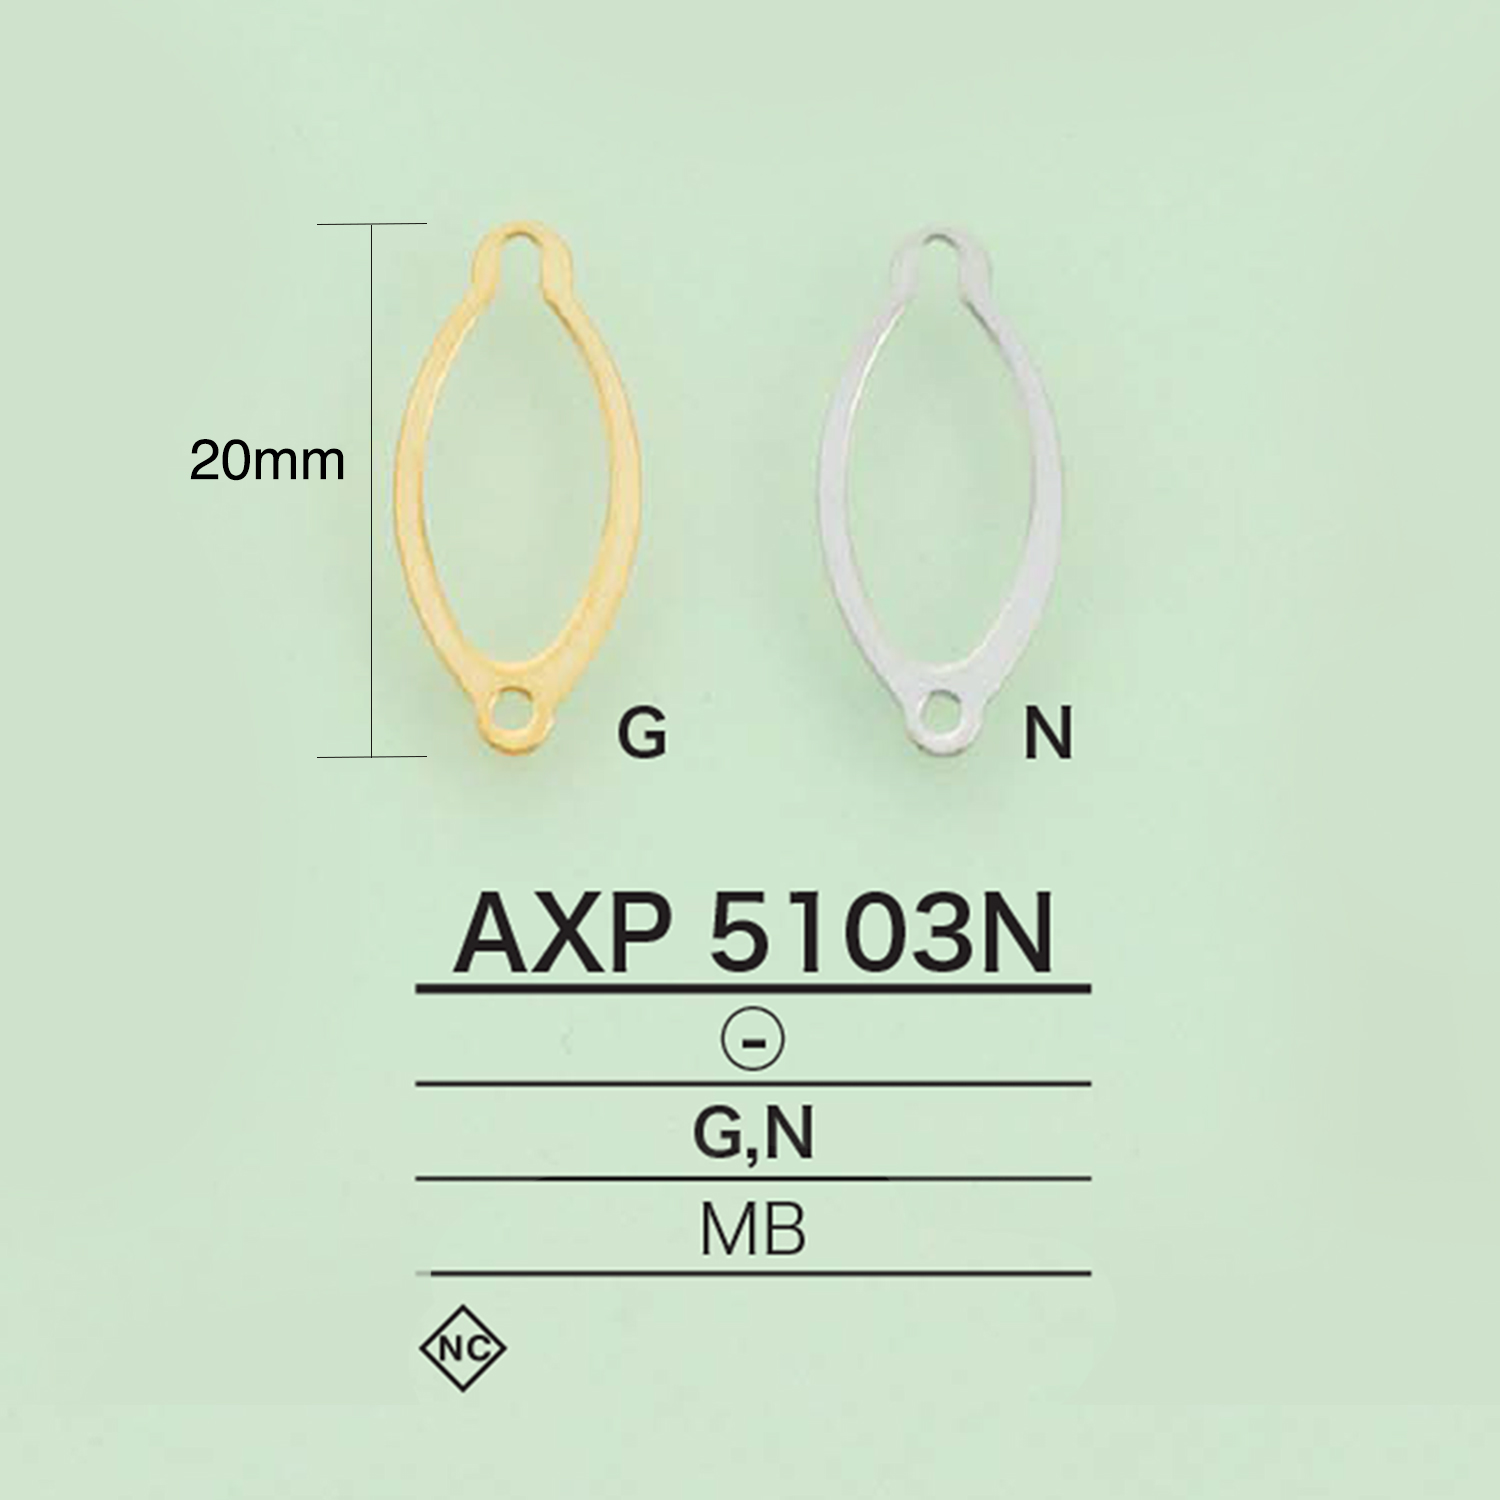 AXP5103N 板法[杂货等] 爱丽丝纽扣